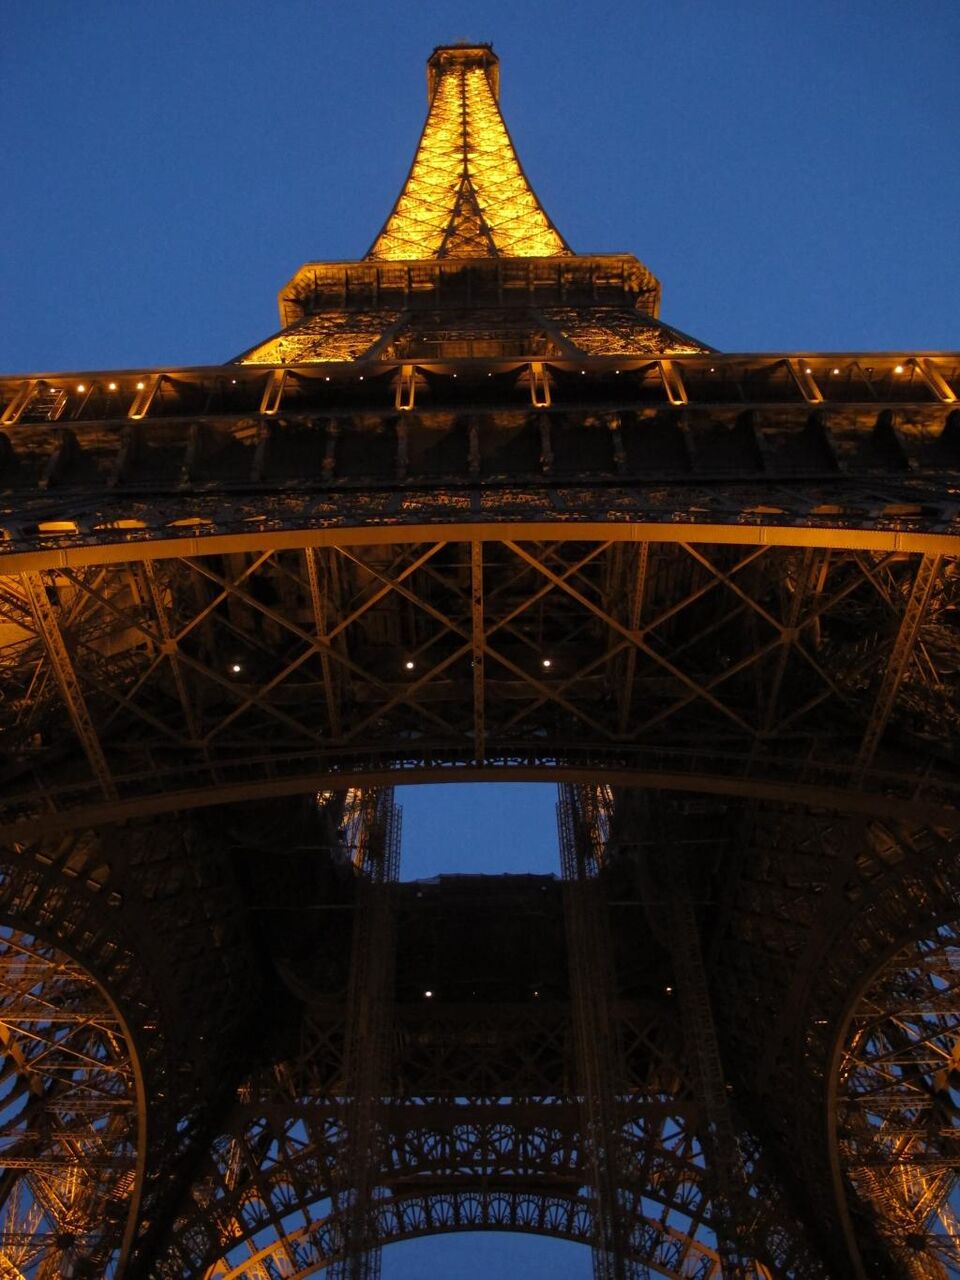 エッフェル塔 パリ 夜景 エッフェル塔 有名な場所 パリ フランスは アーキテクチャ マイクロンケミーちゃんの壁紙シートによる高精細マップ 材料入力します 壁紙